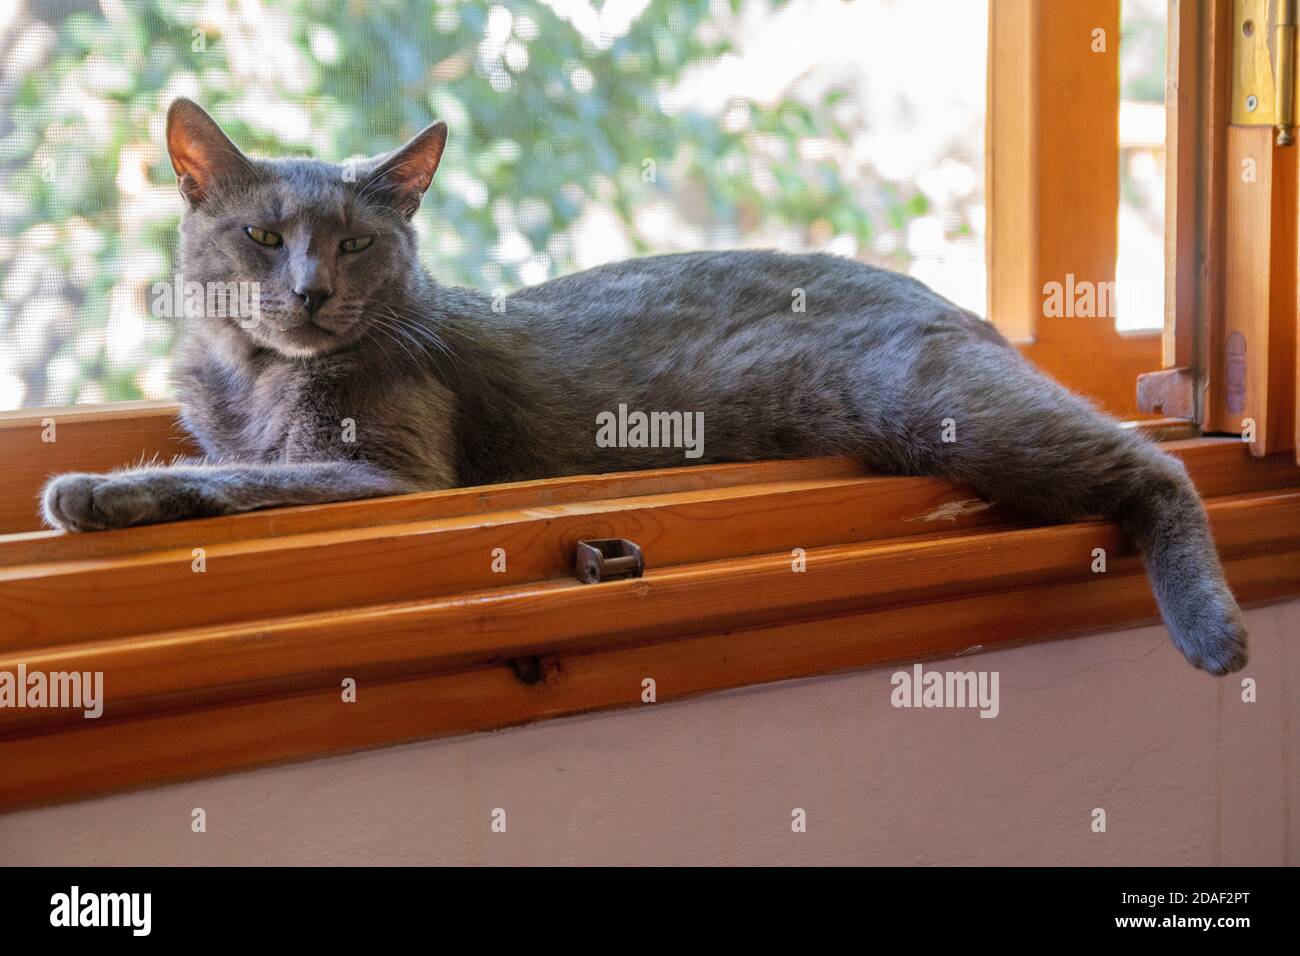 Le chat gris est couché confortable à l'intérieur d'un rebord de fenêtre en bois par une journée ensoleillée. Elle regarde directement dans l'appareil photo avec des yeux verts Banque D'Images